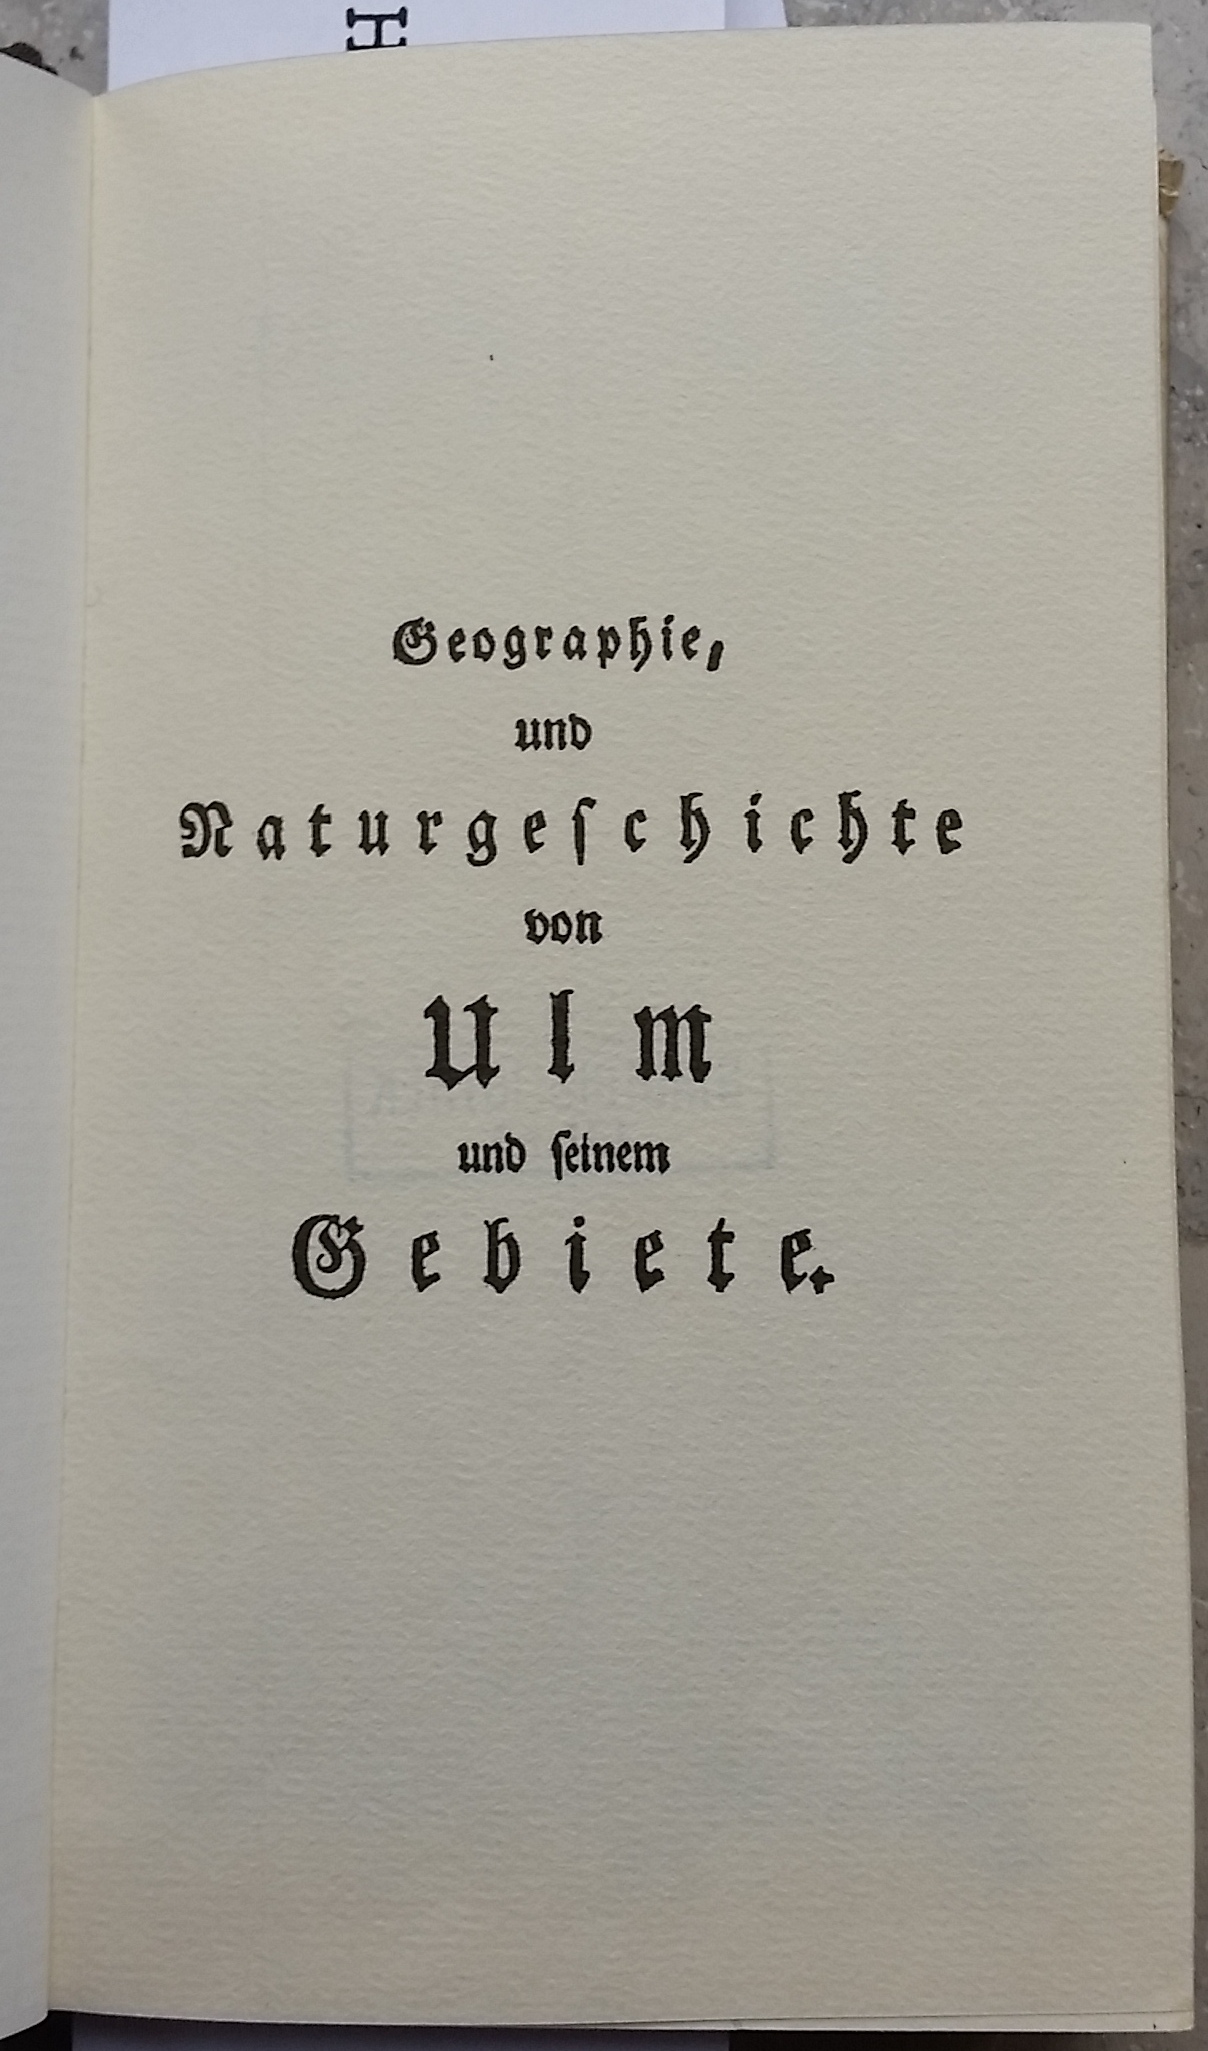 Glockengiesser, Johann Georg Wolffgang, Stadtphysikus in Geislingen